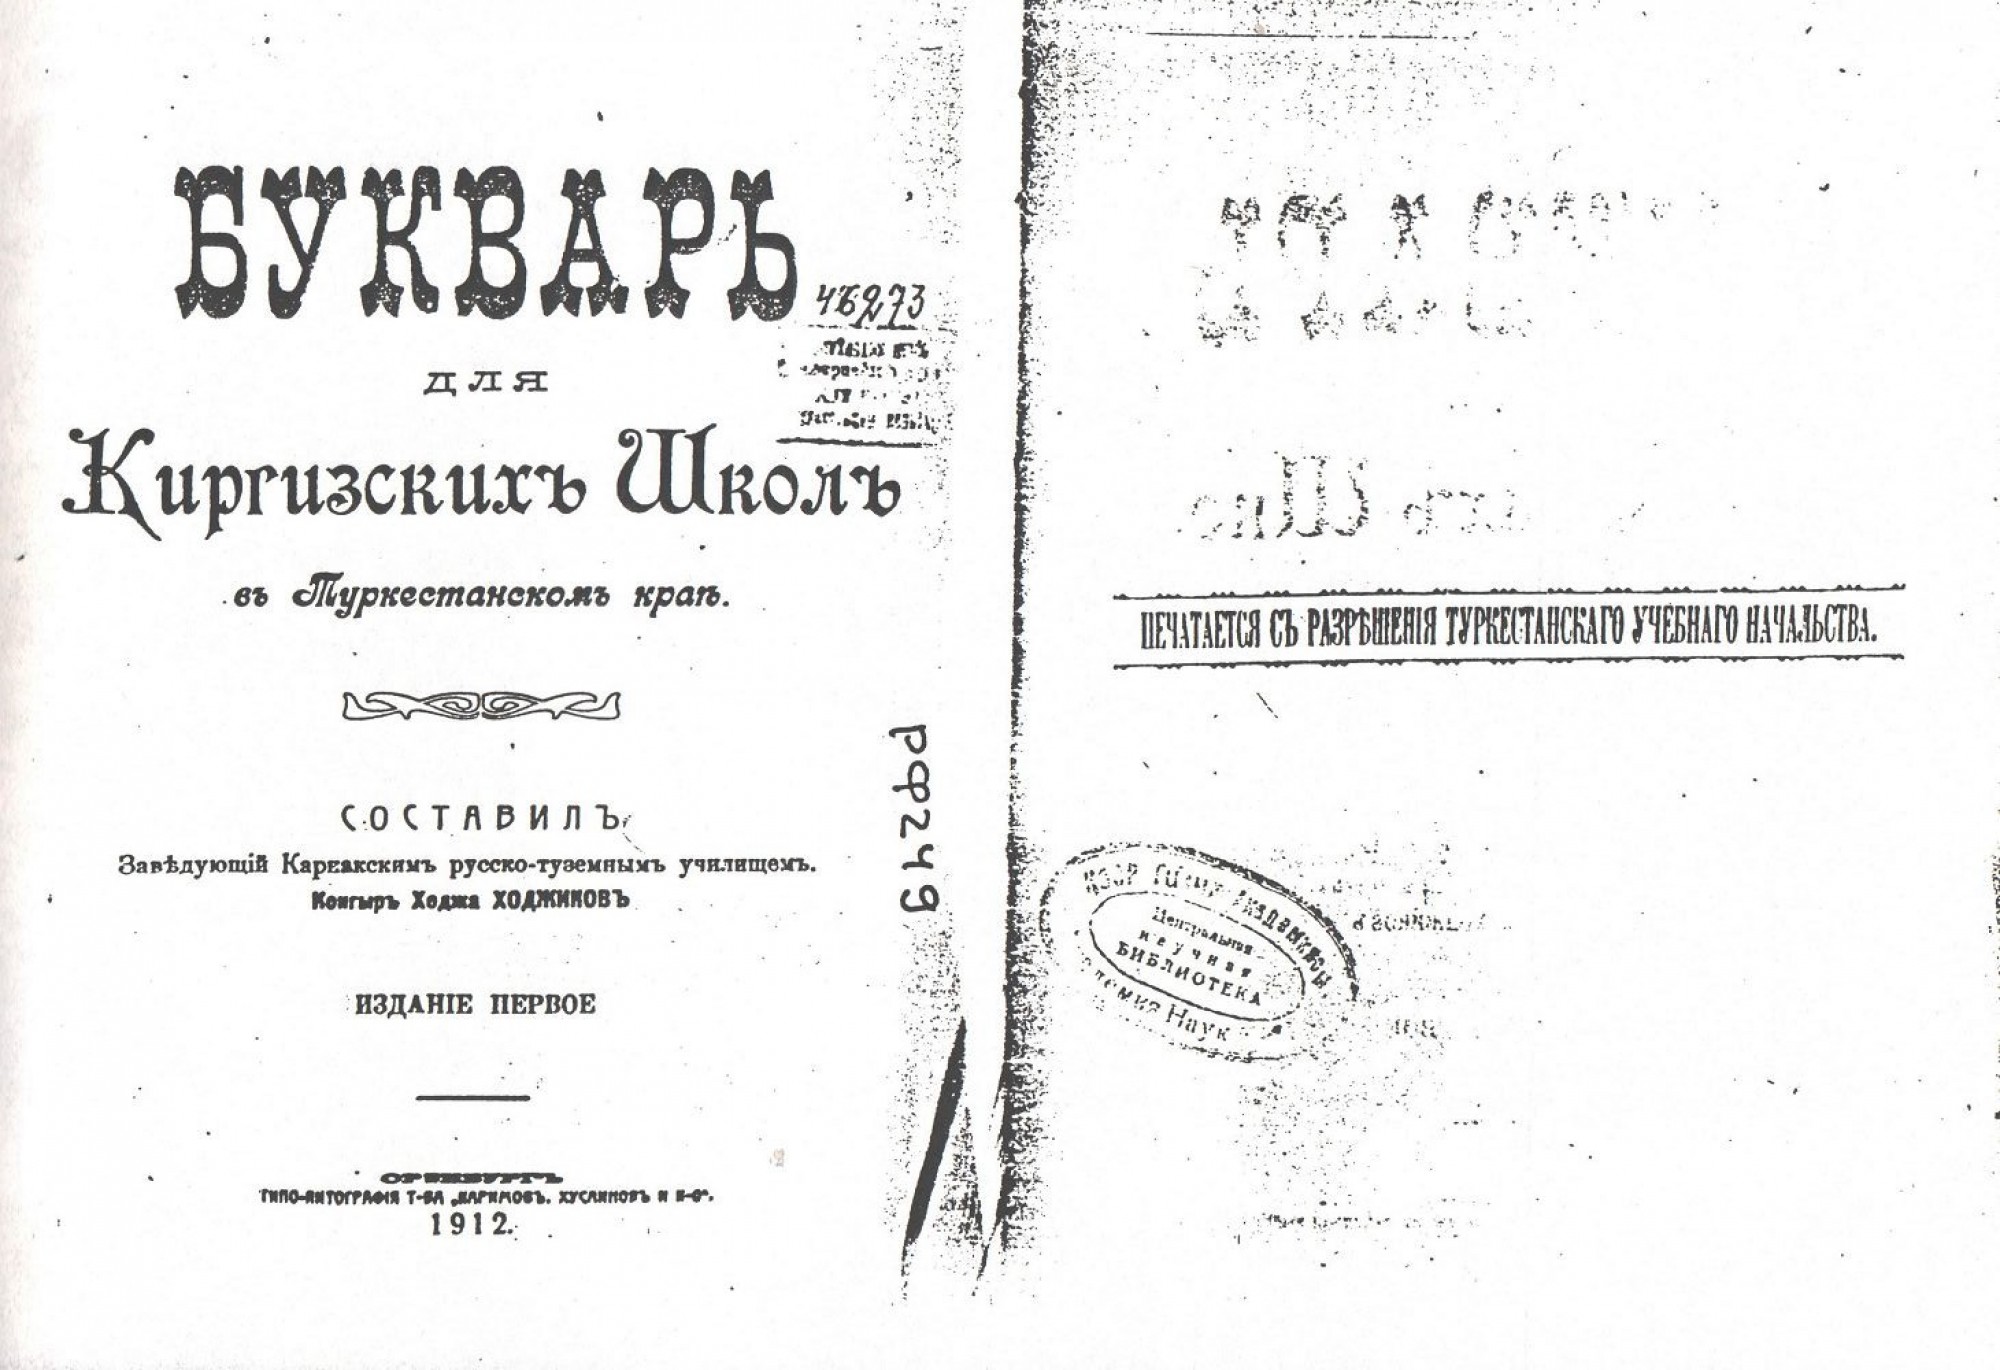 Alphabet of Kozhikov